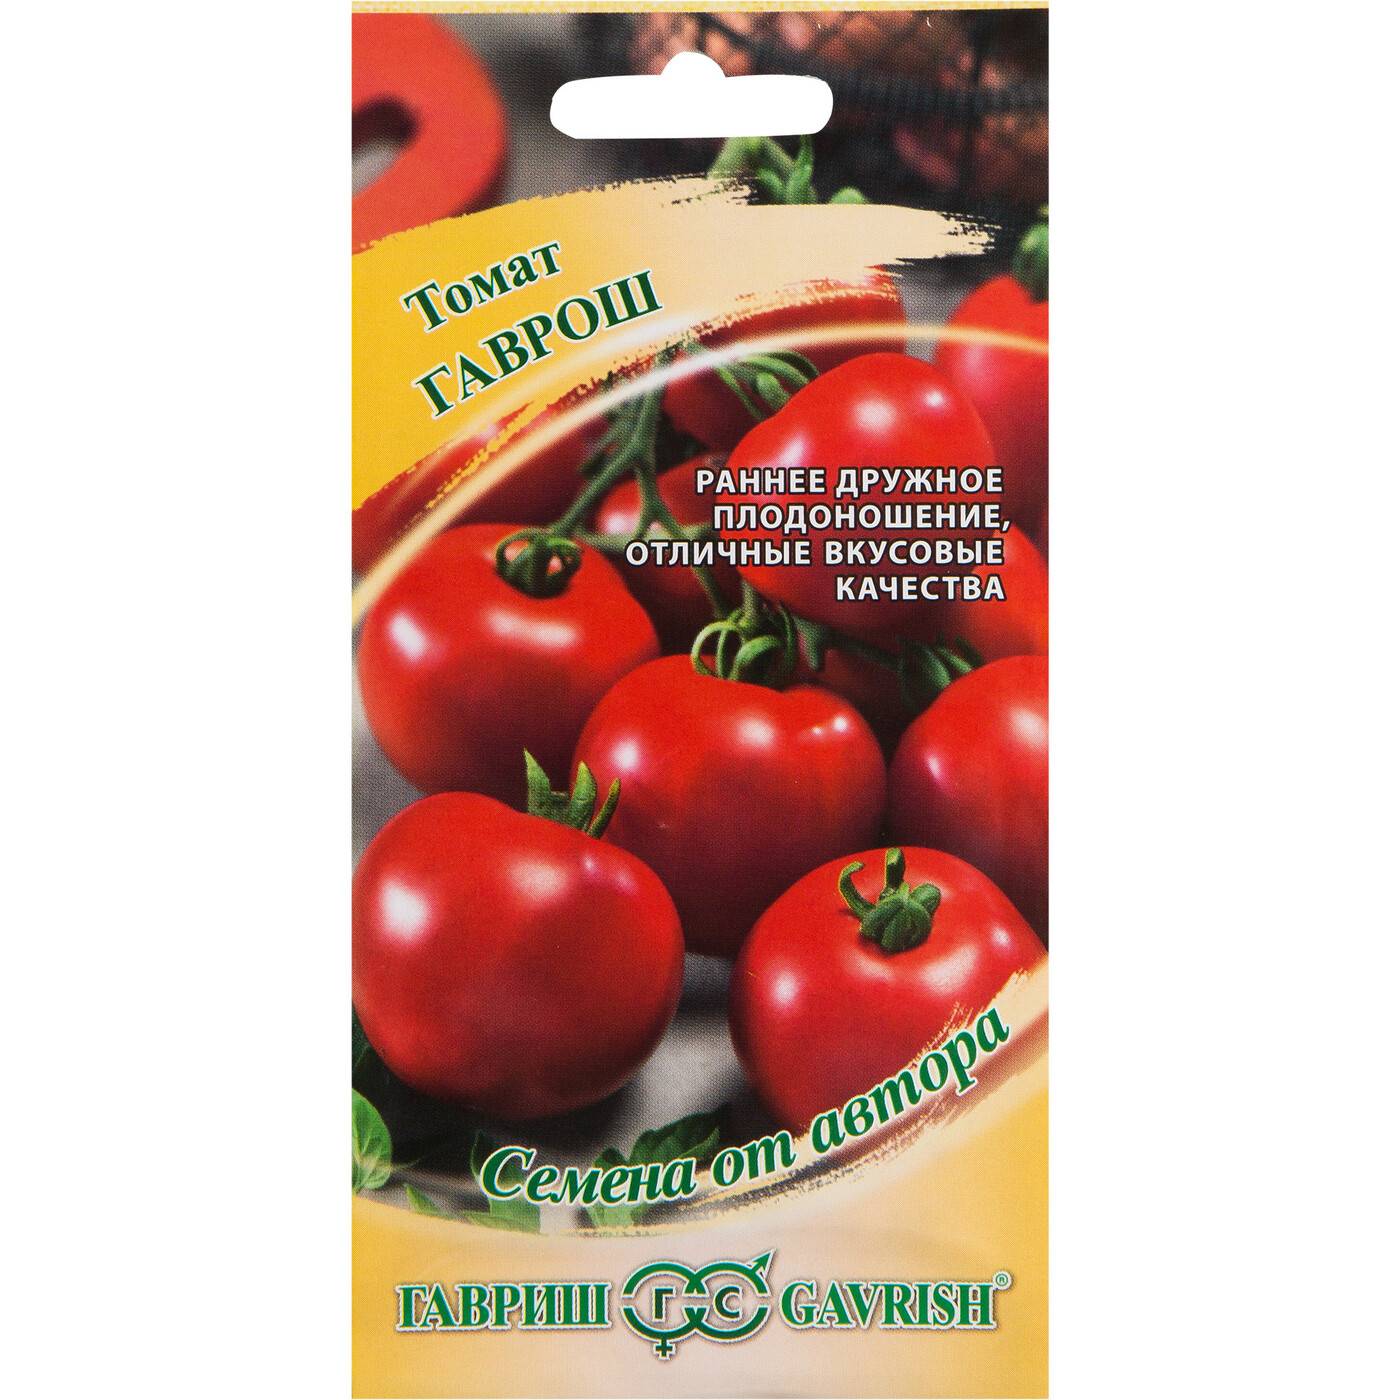 Характеристика российского томата гаврош и особенности выращивания сорта